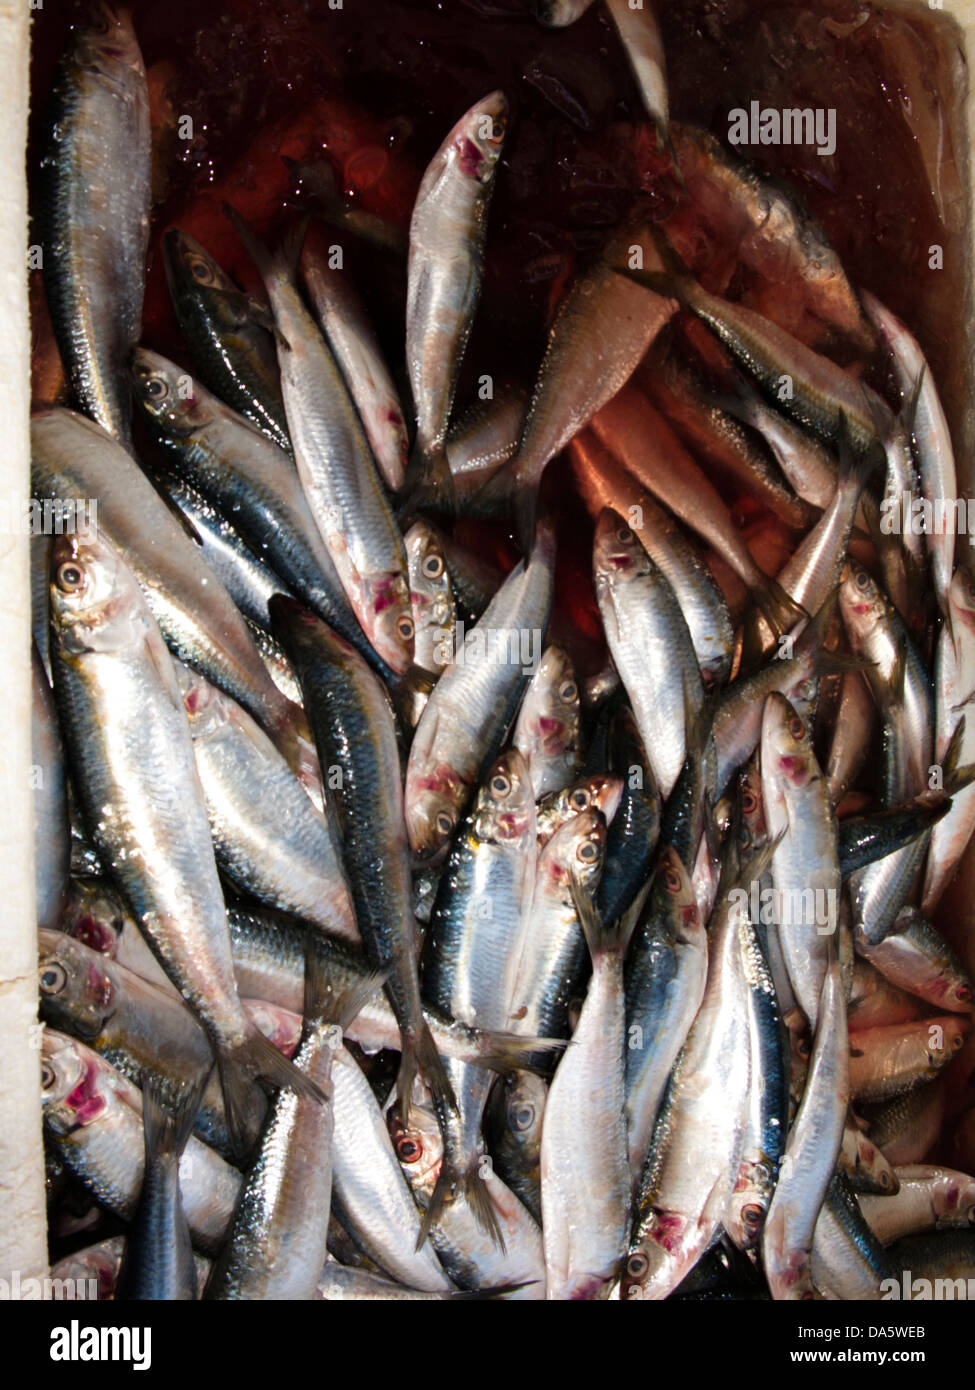 Pescado fresco en el mercado pesquero local en la ciudad de Santos, en la costa del estado de Sao Paulo, Brasil Foto de stock